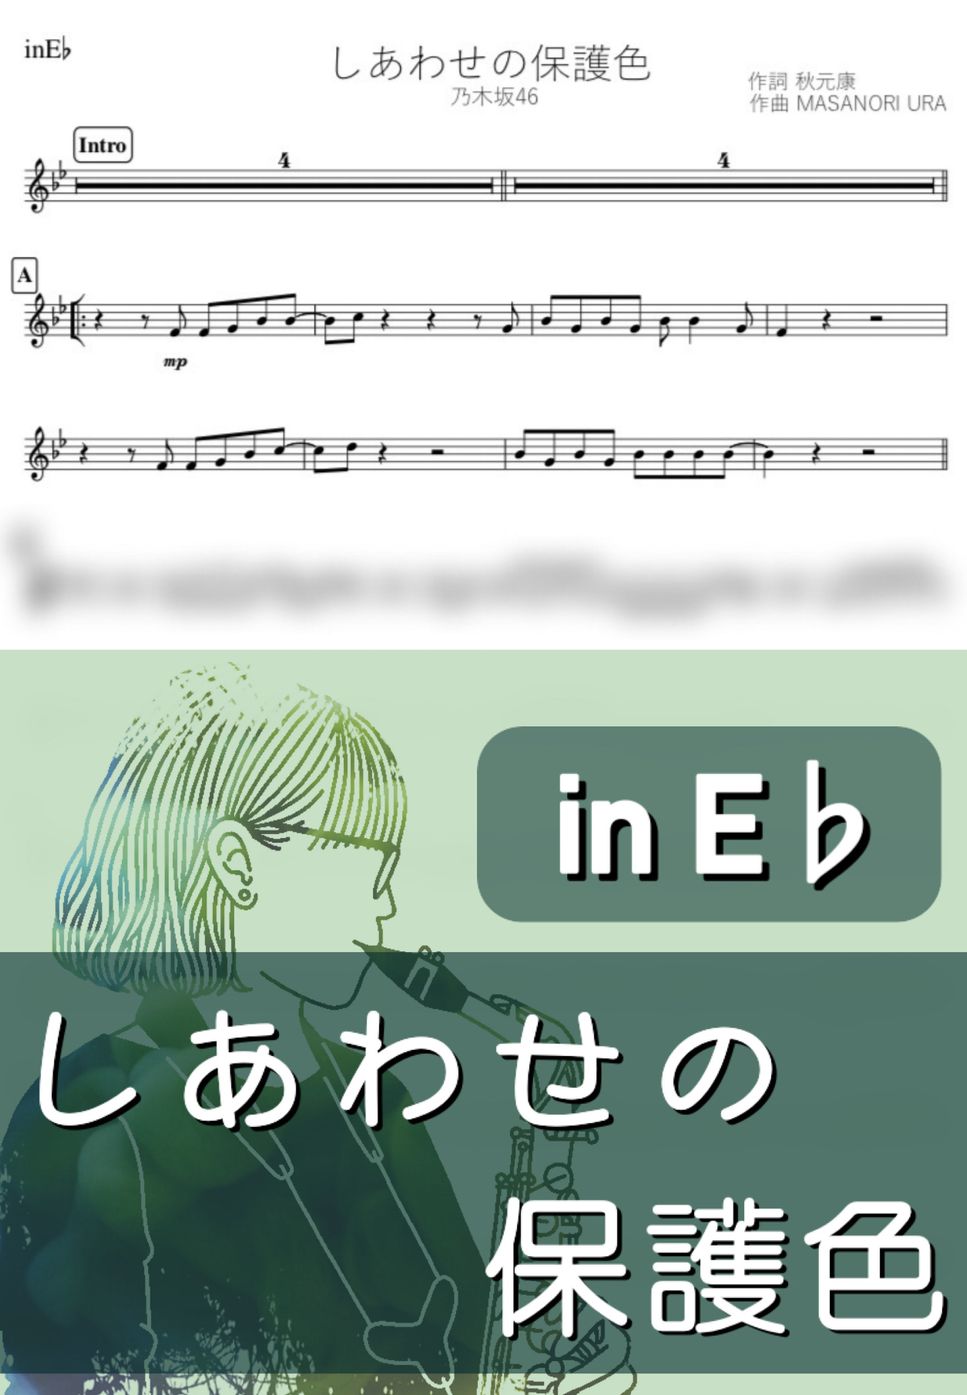 乃木坂46 - しあわせの保護色 (E♭) by kanamusic